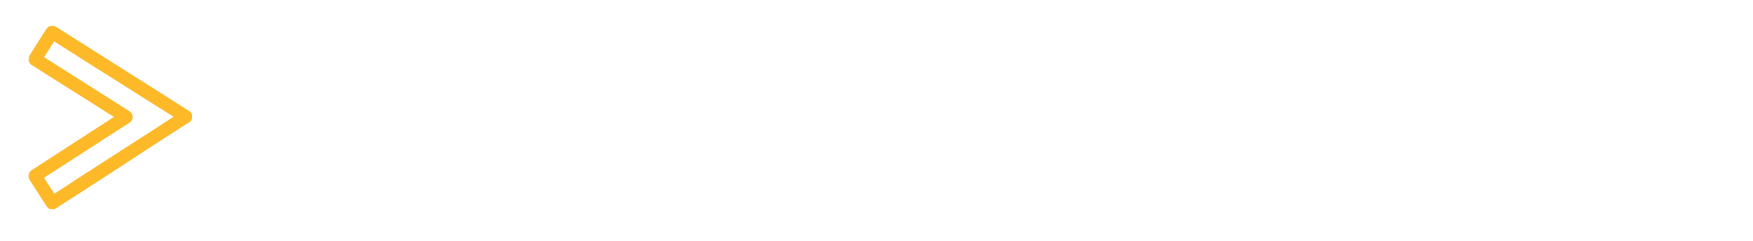 ITSkillsCenter Logo White